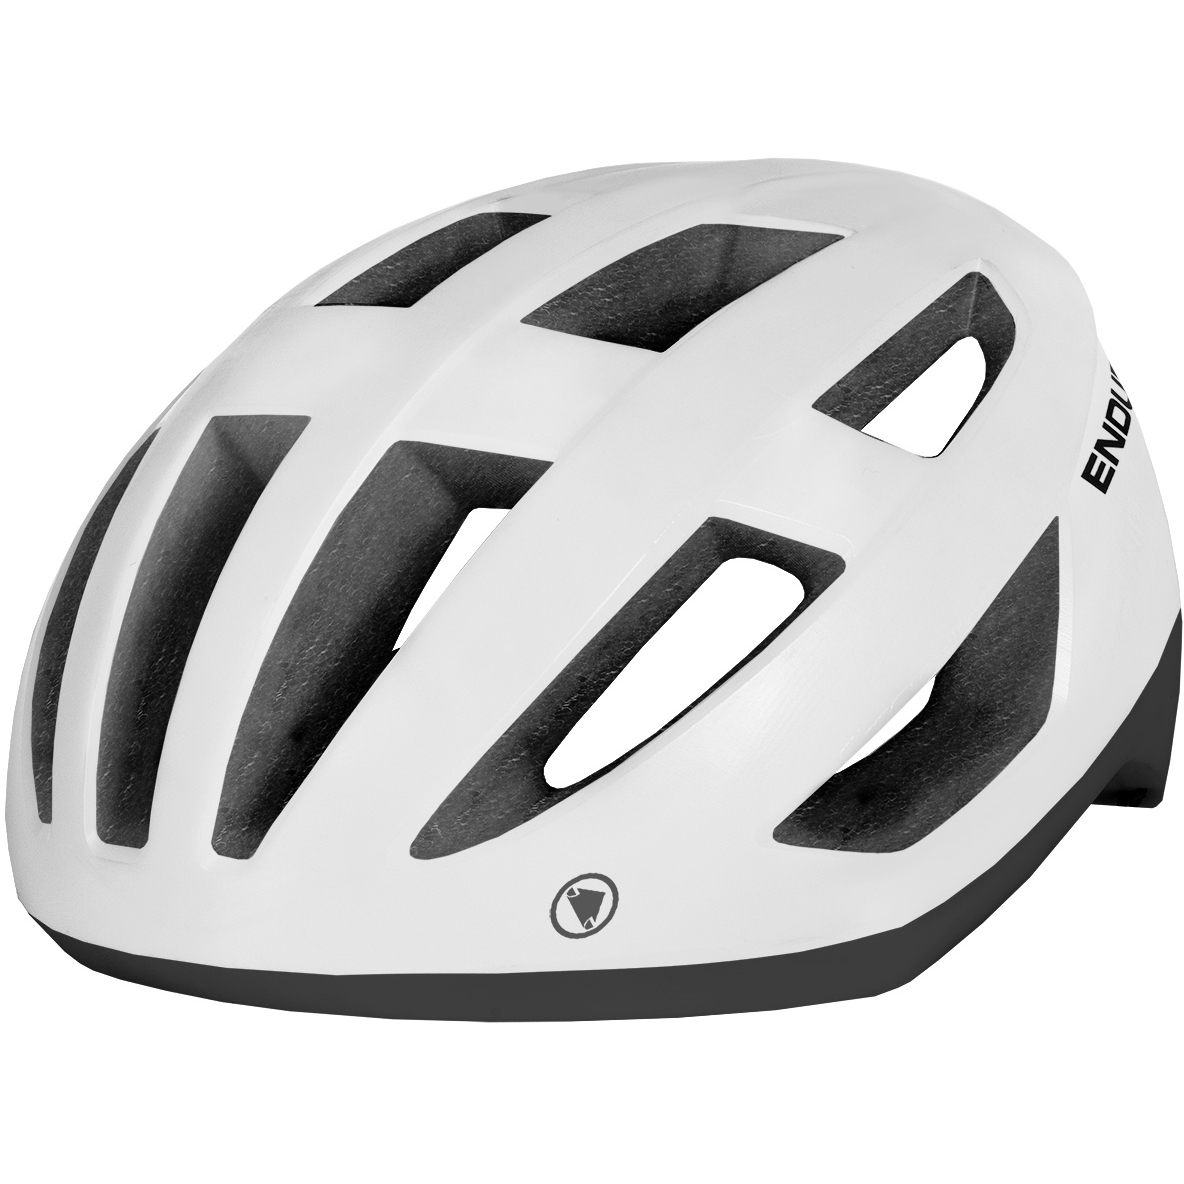 ENDURA Pro SL Helmet - Casque vélo route homme